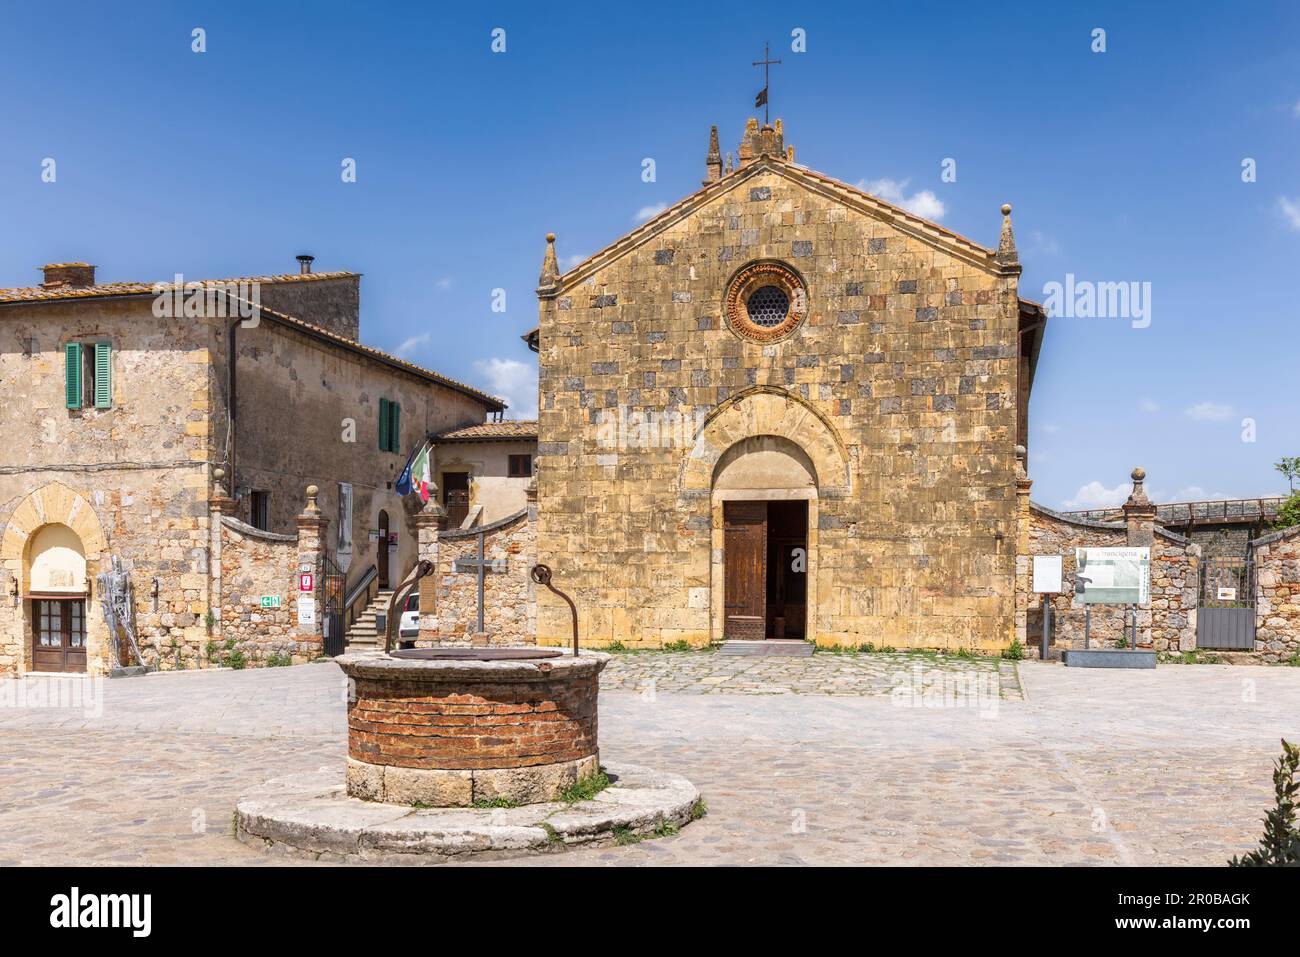 Monteriggioni, province de Sienne, Toscane, Italie. L'église romane-gothique de Santa Maria datant du 13th siècle. Banque D'Images